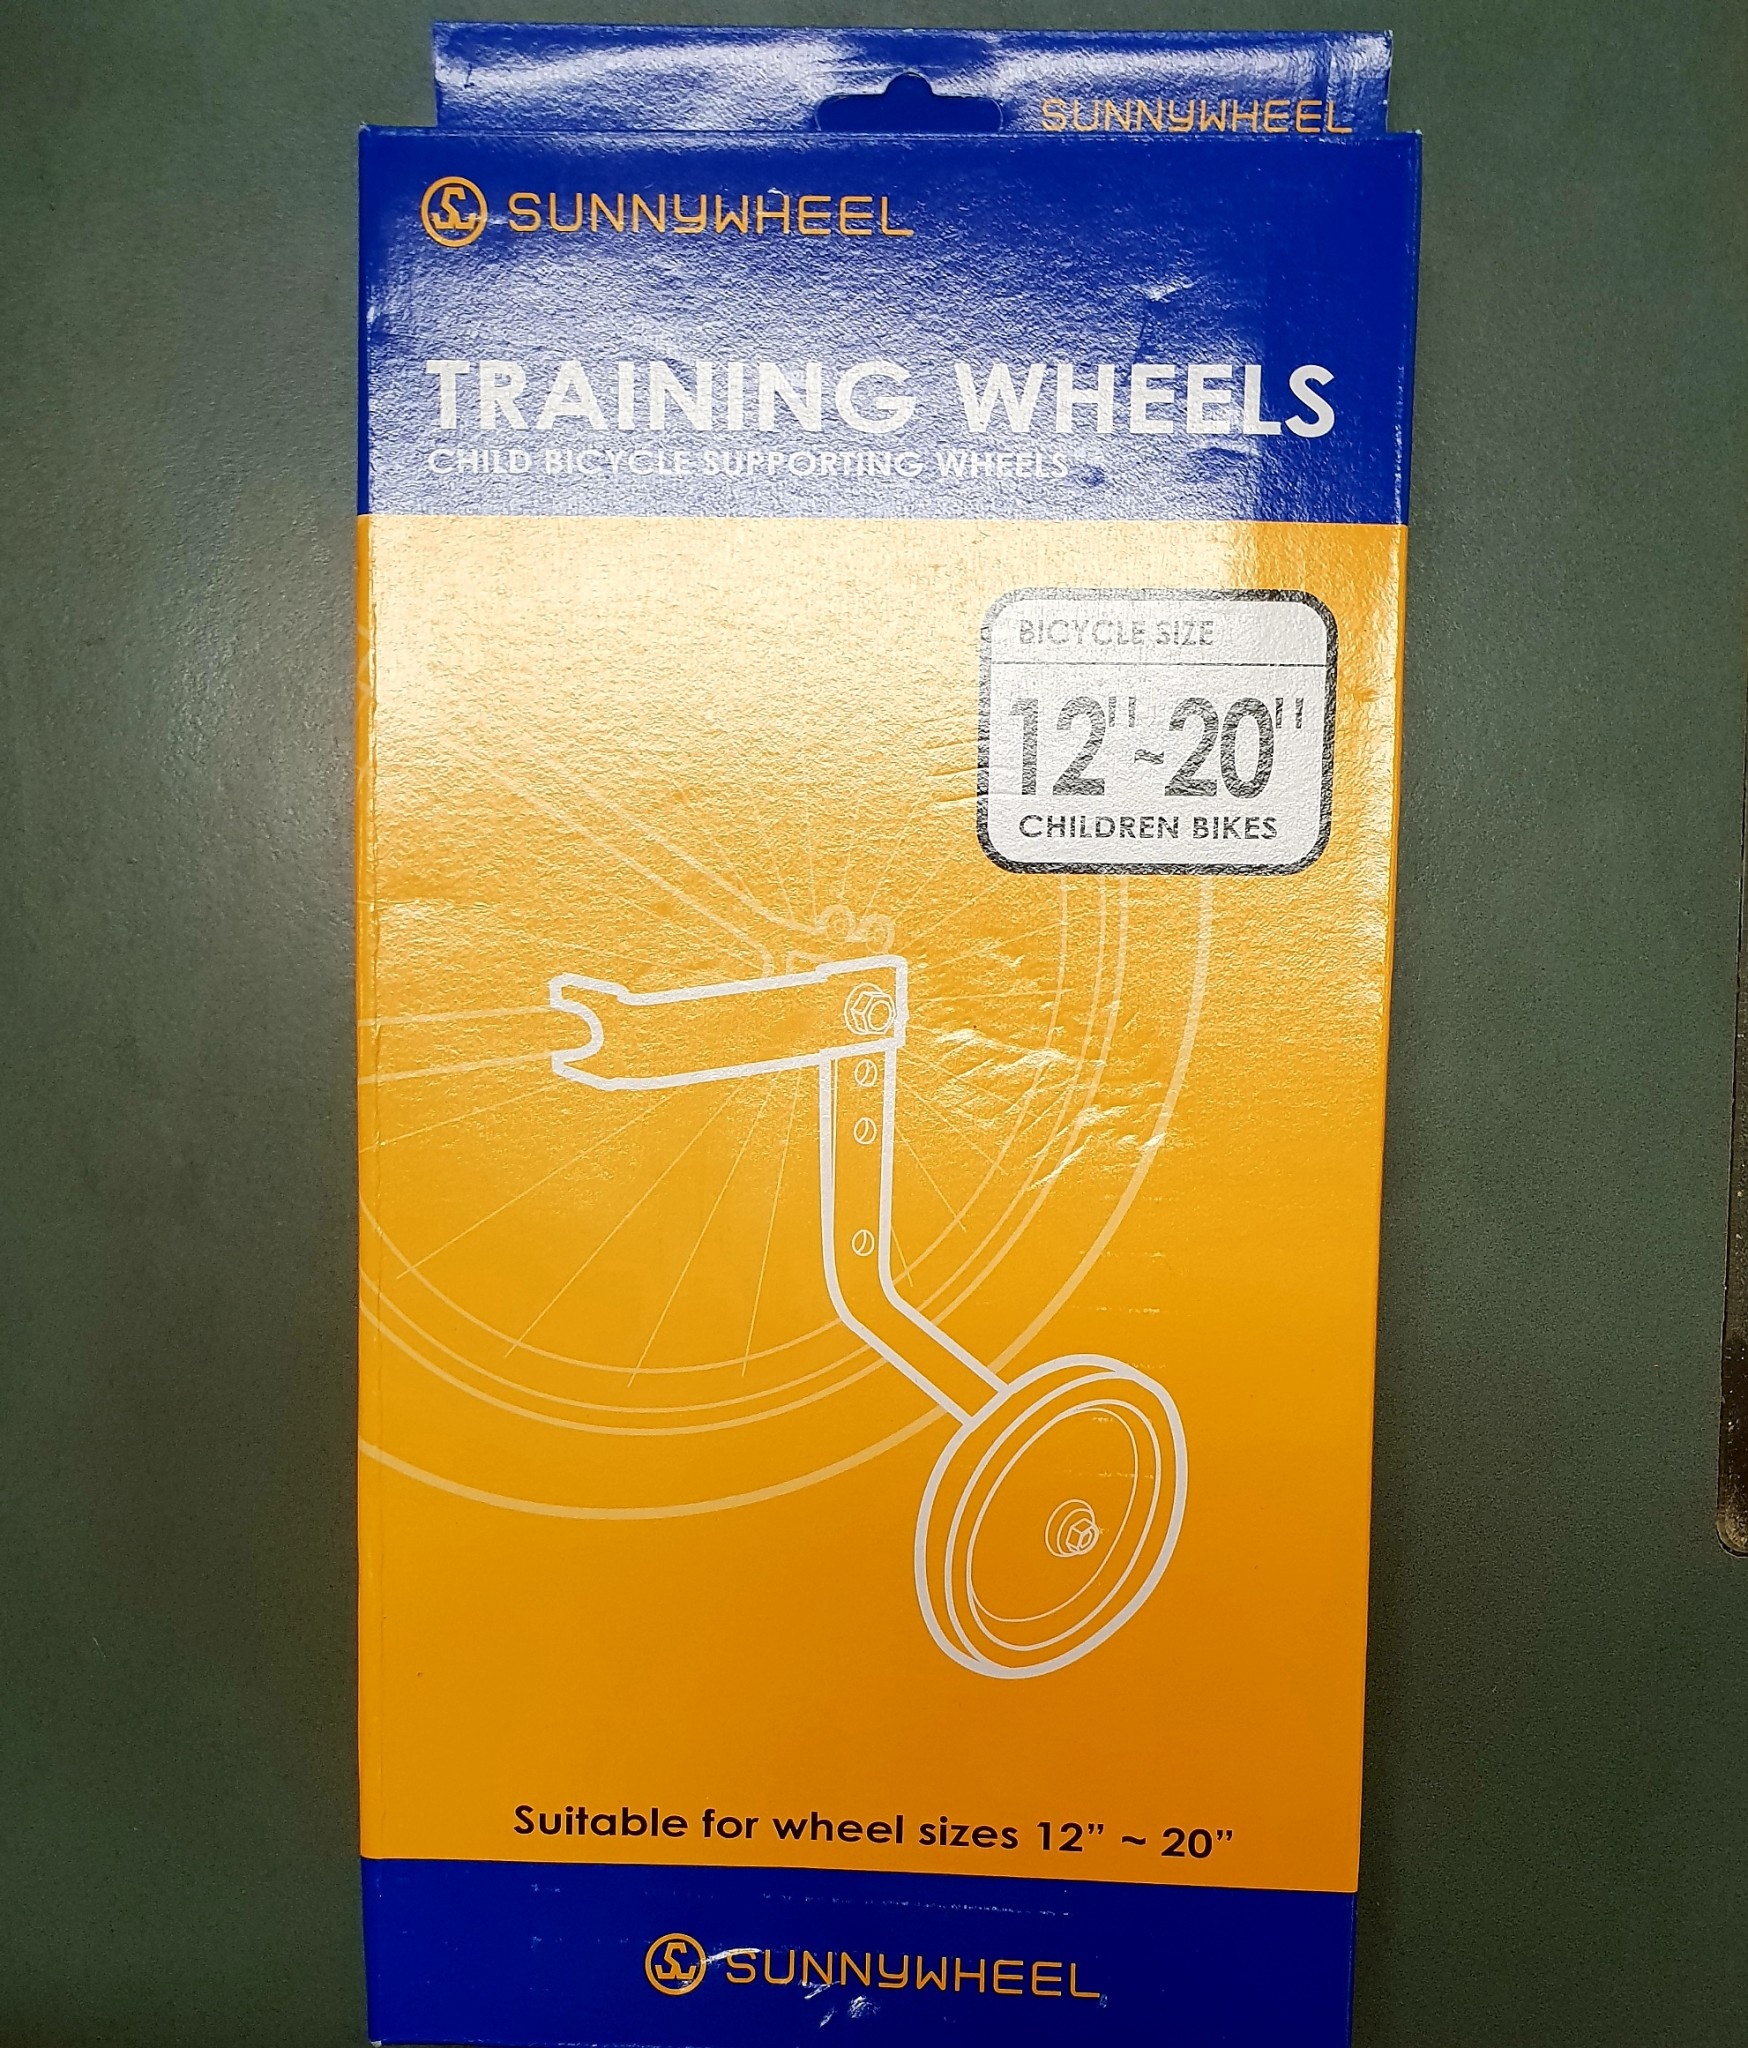 training wheel sizes